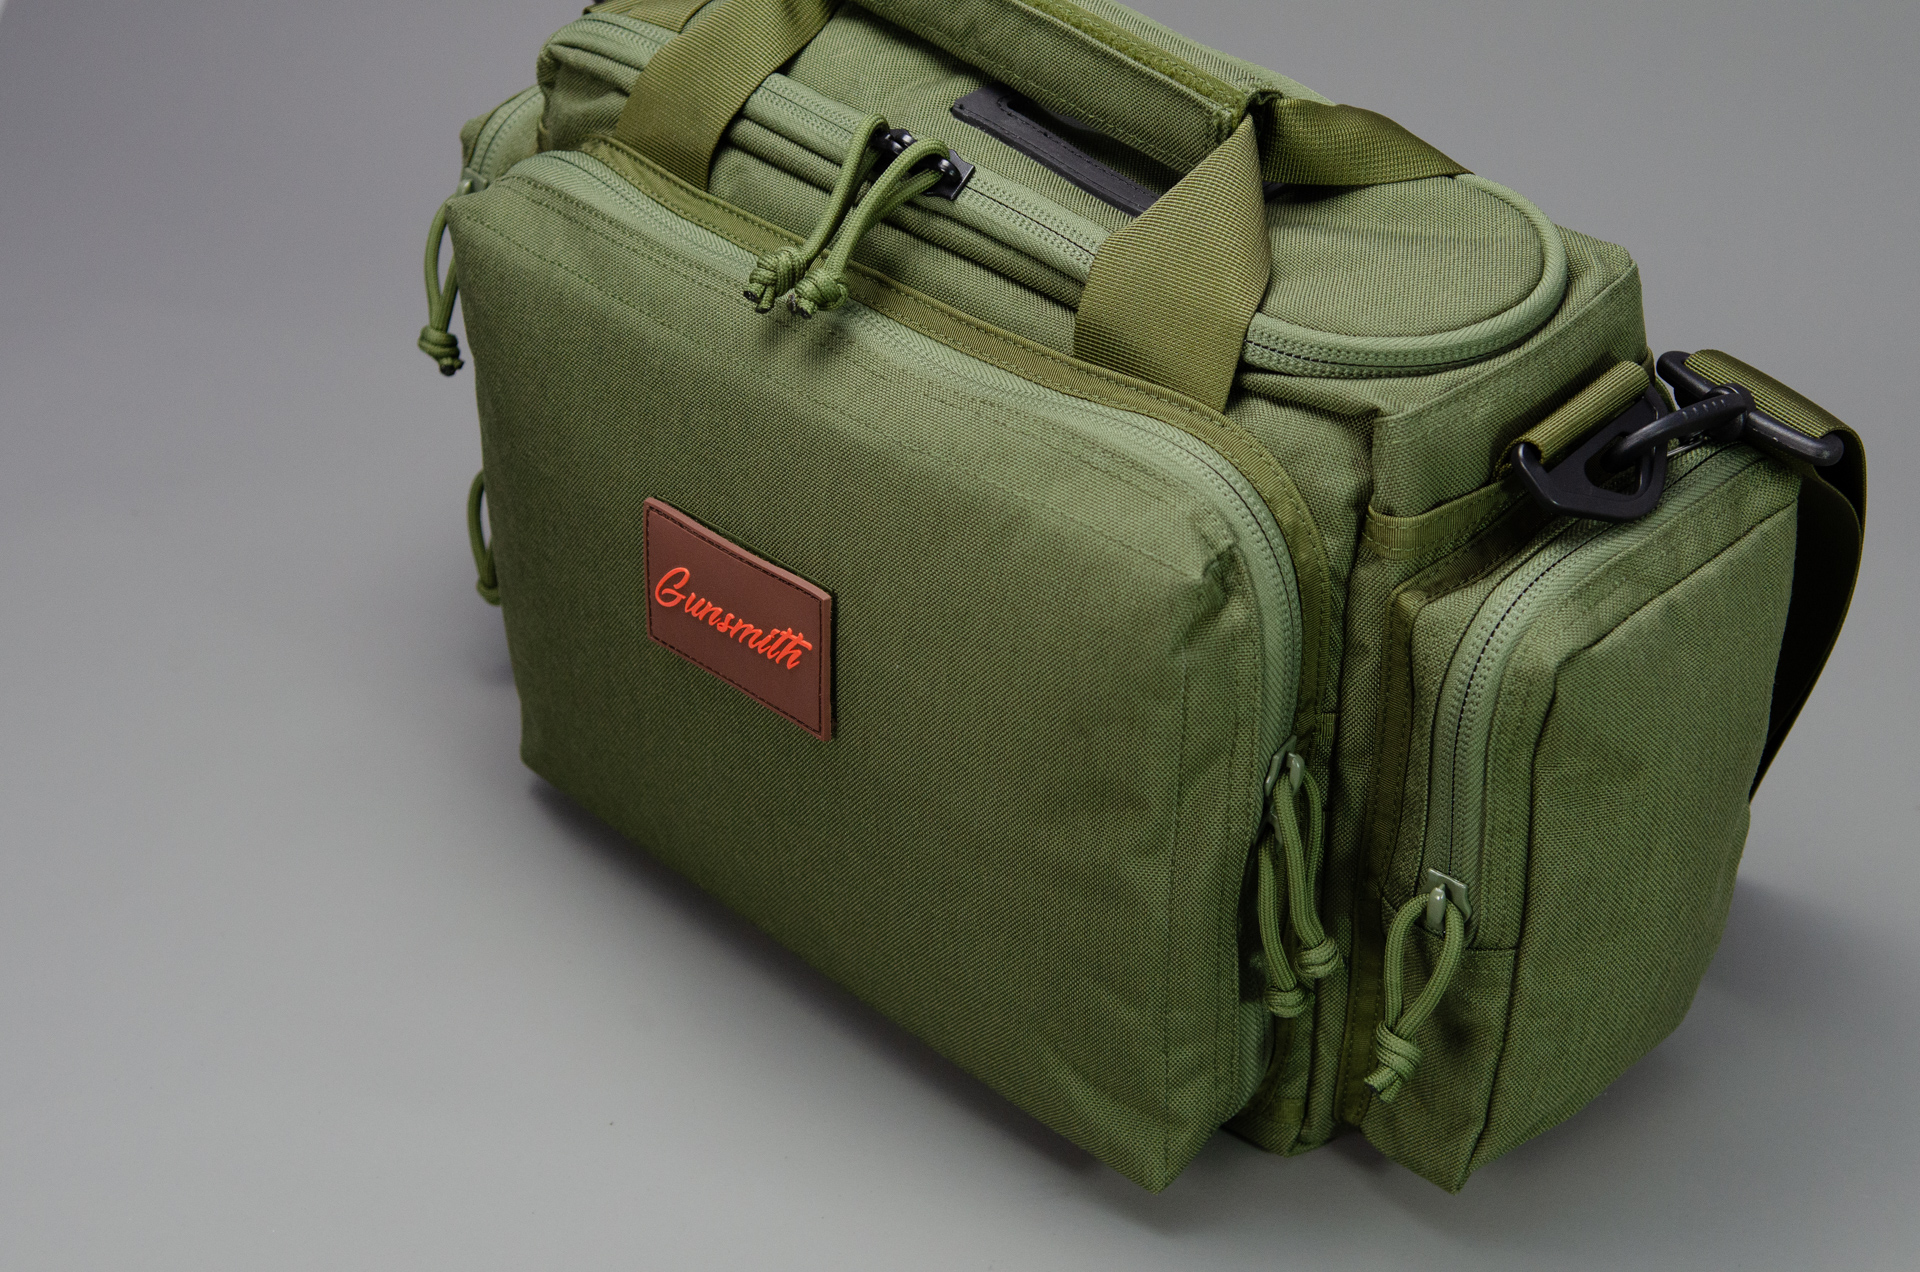 Hochwertiger Range Bag für Kurzwaffen, Munition, Zubehör - Angebote nur von  Waffenhändlern - Waffenforum